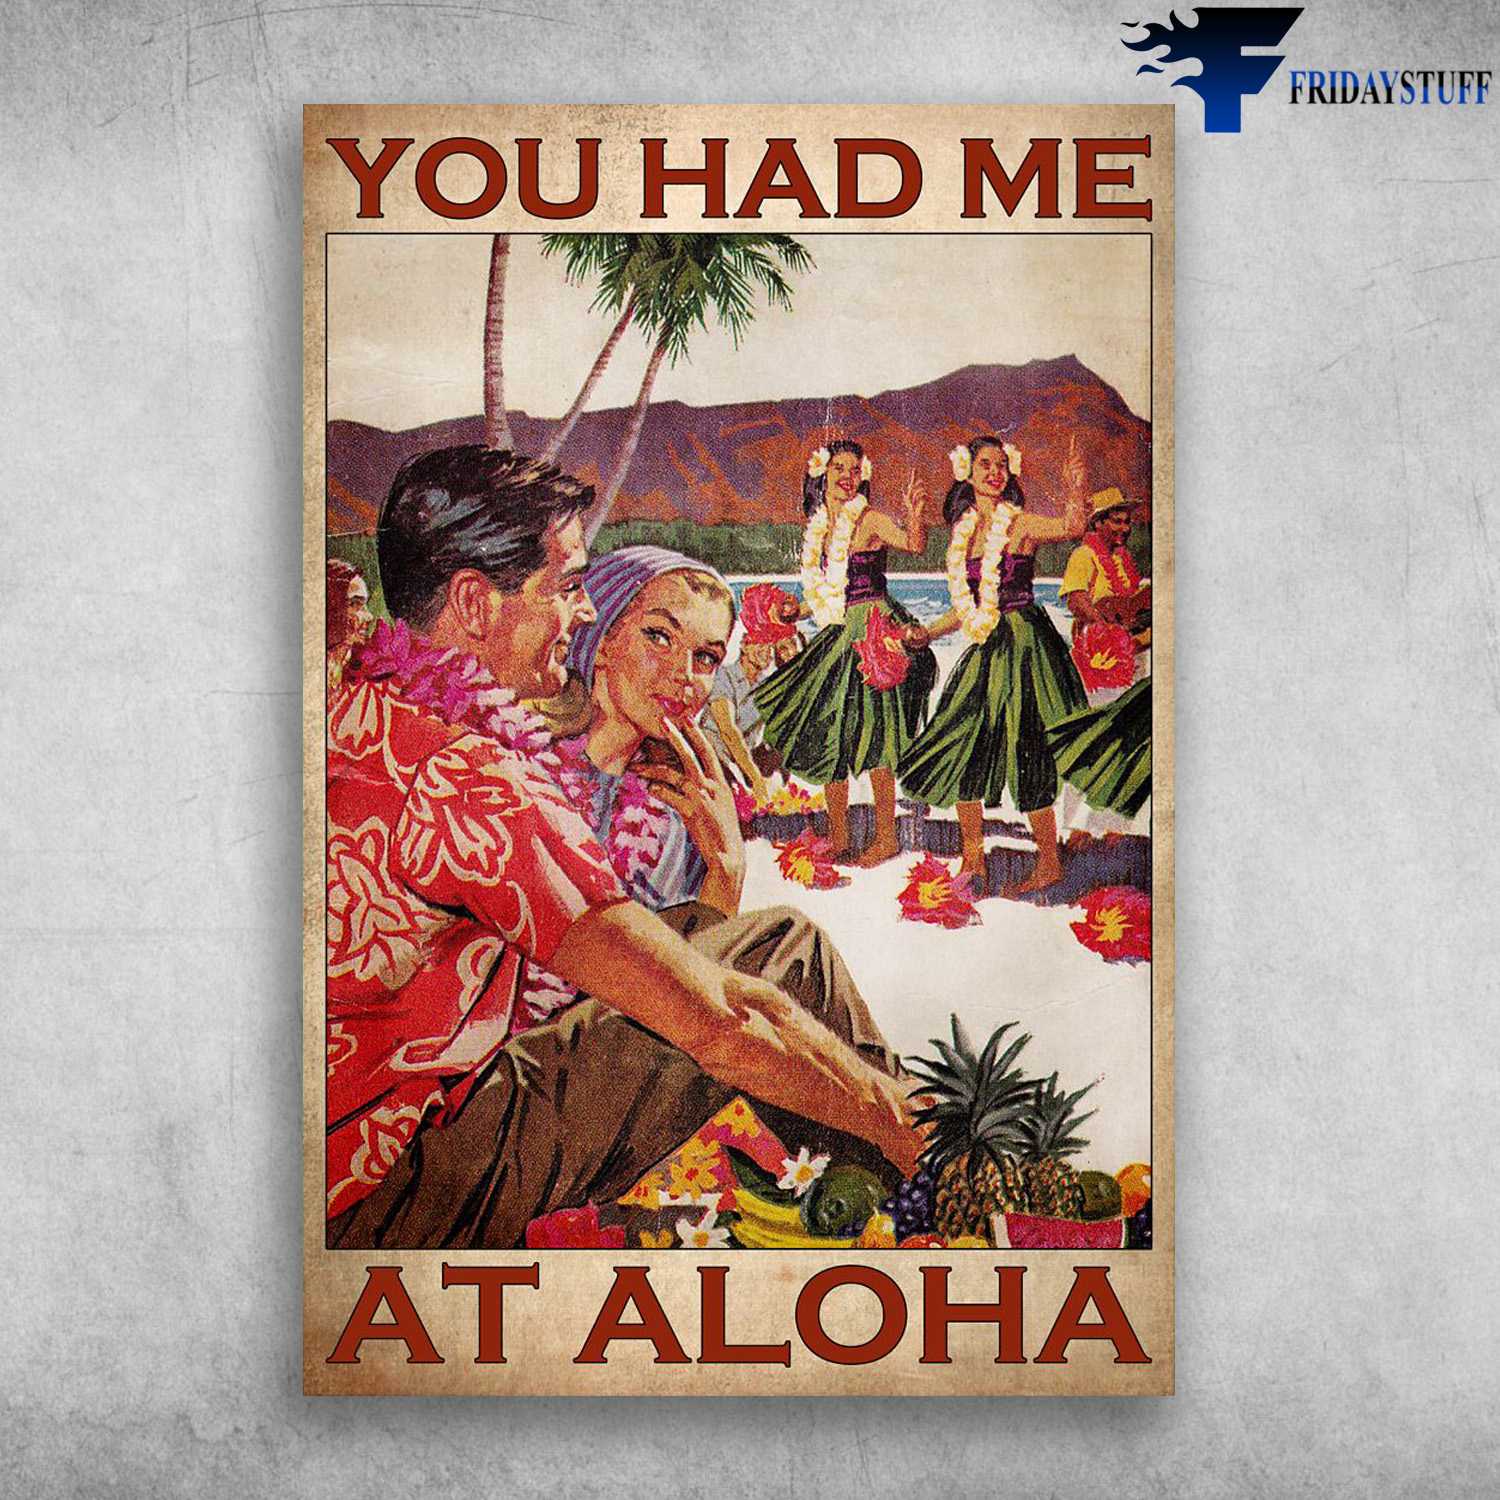 Hawaii People - You Had Me, At Aloha, Hawaii Girl Dancing